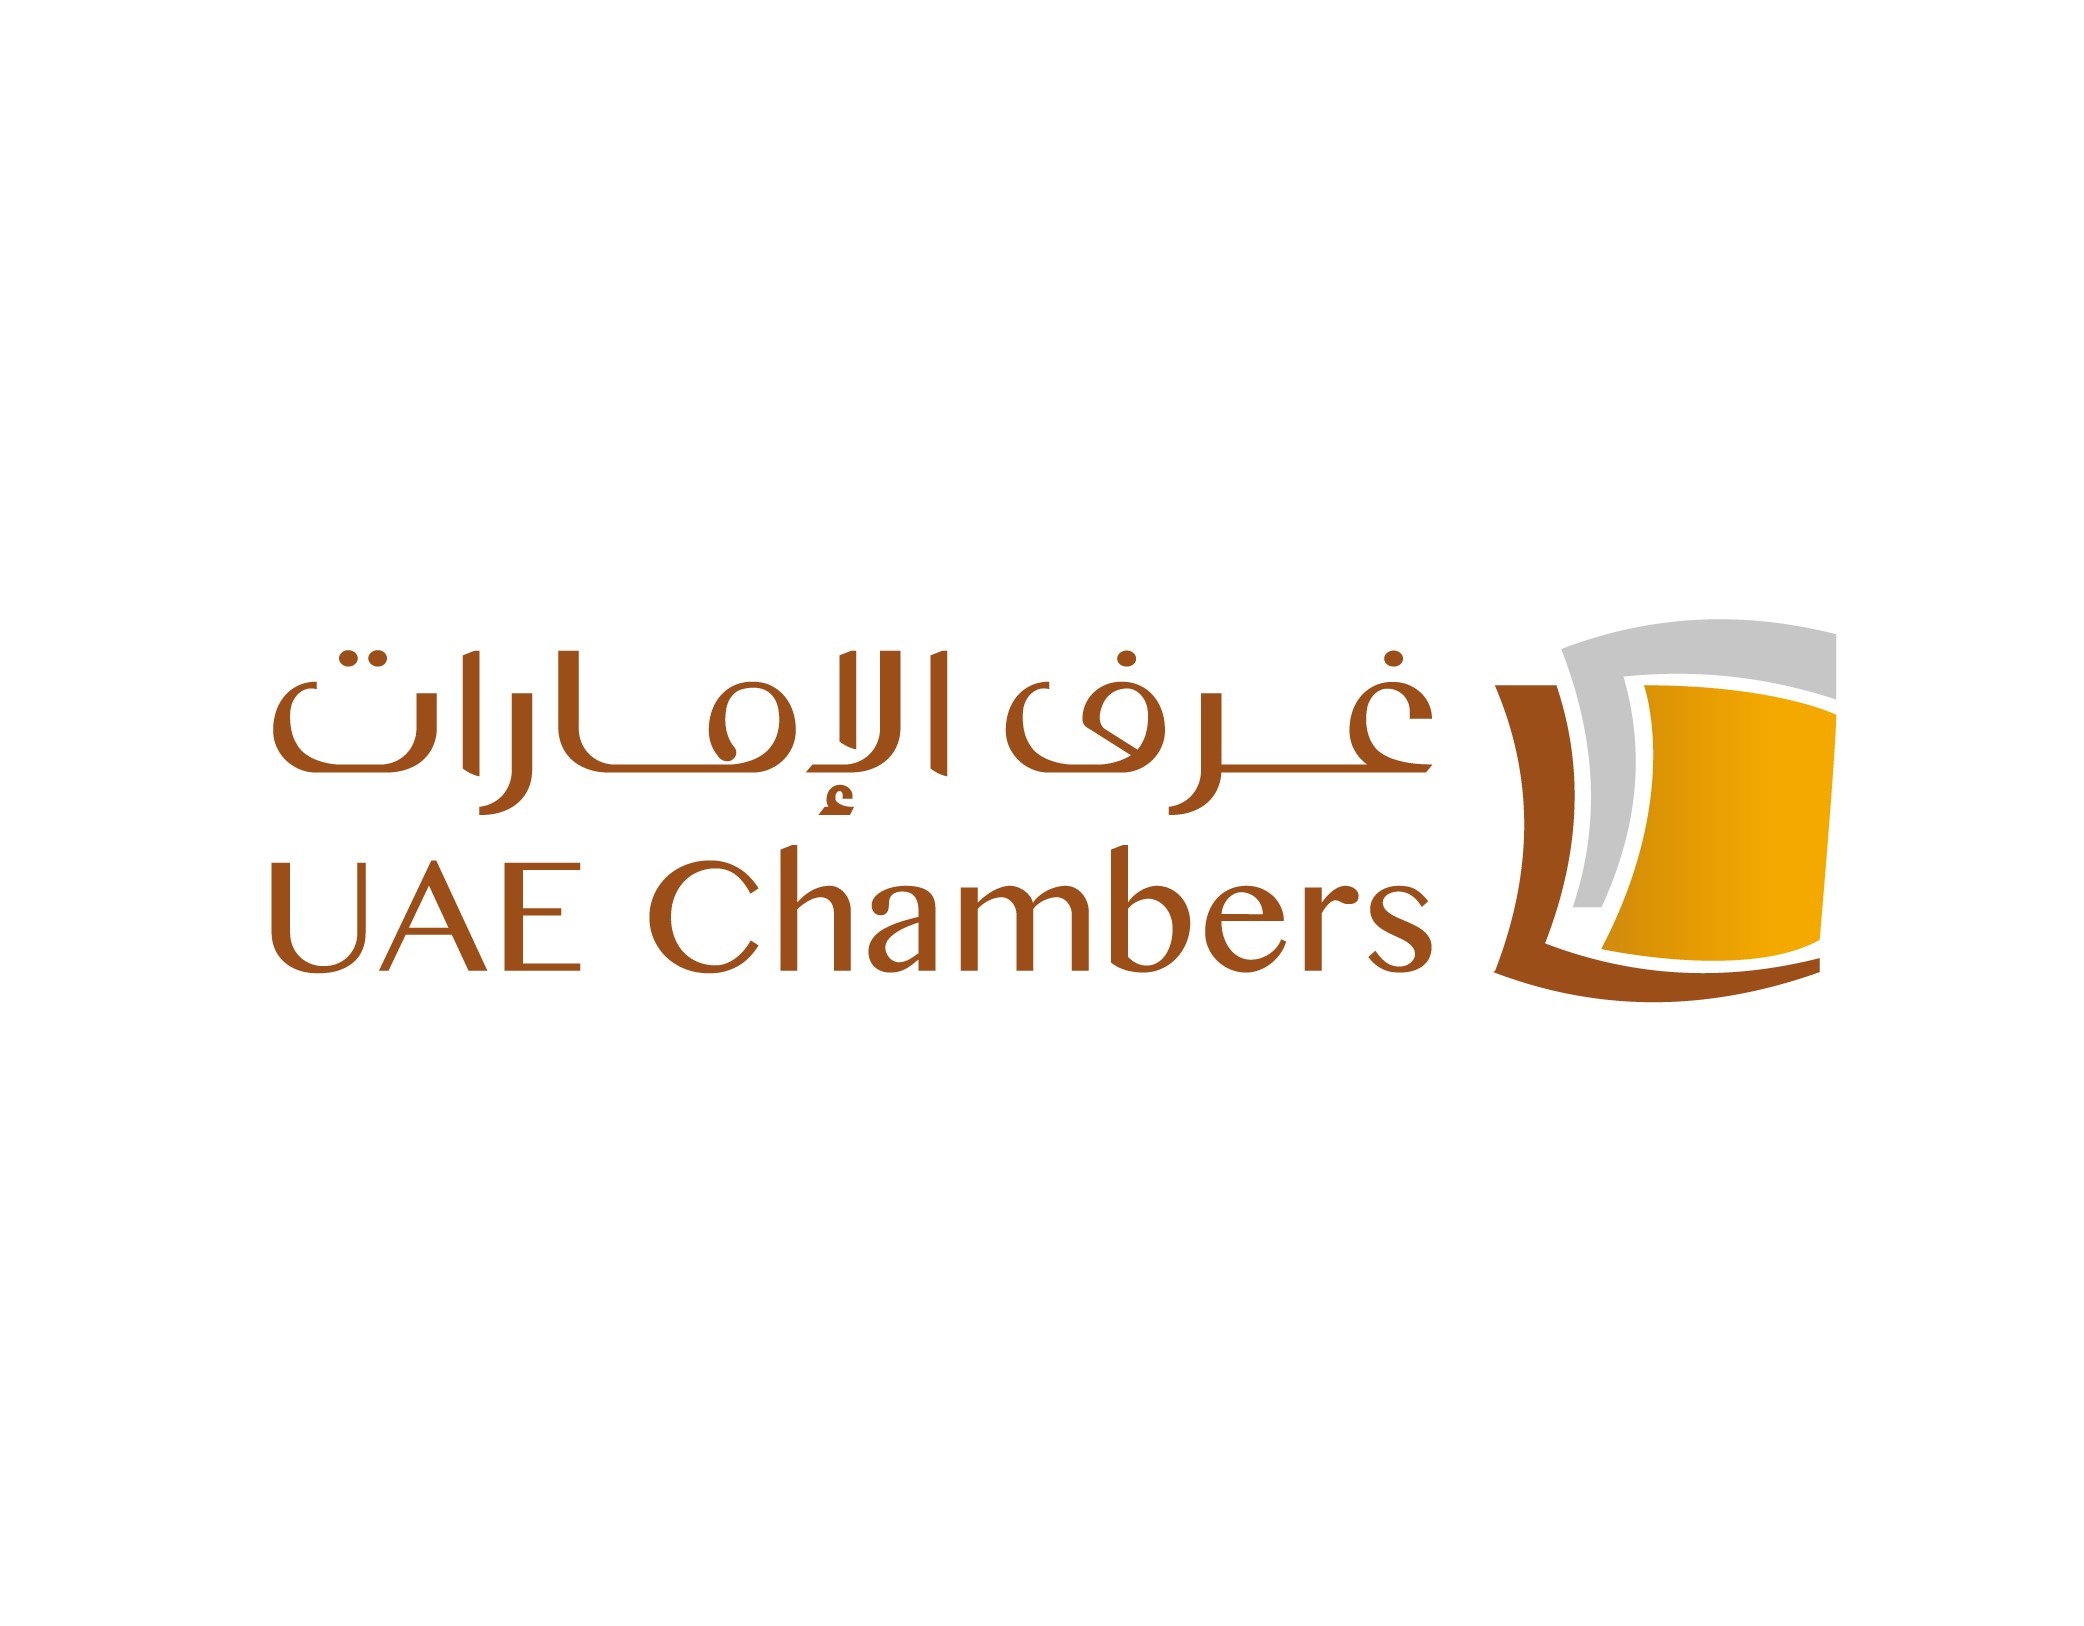 UAE Chambers